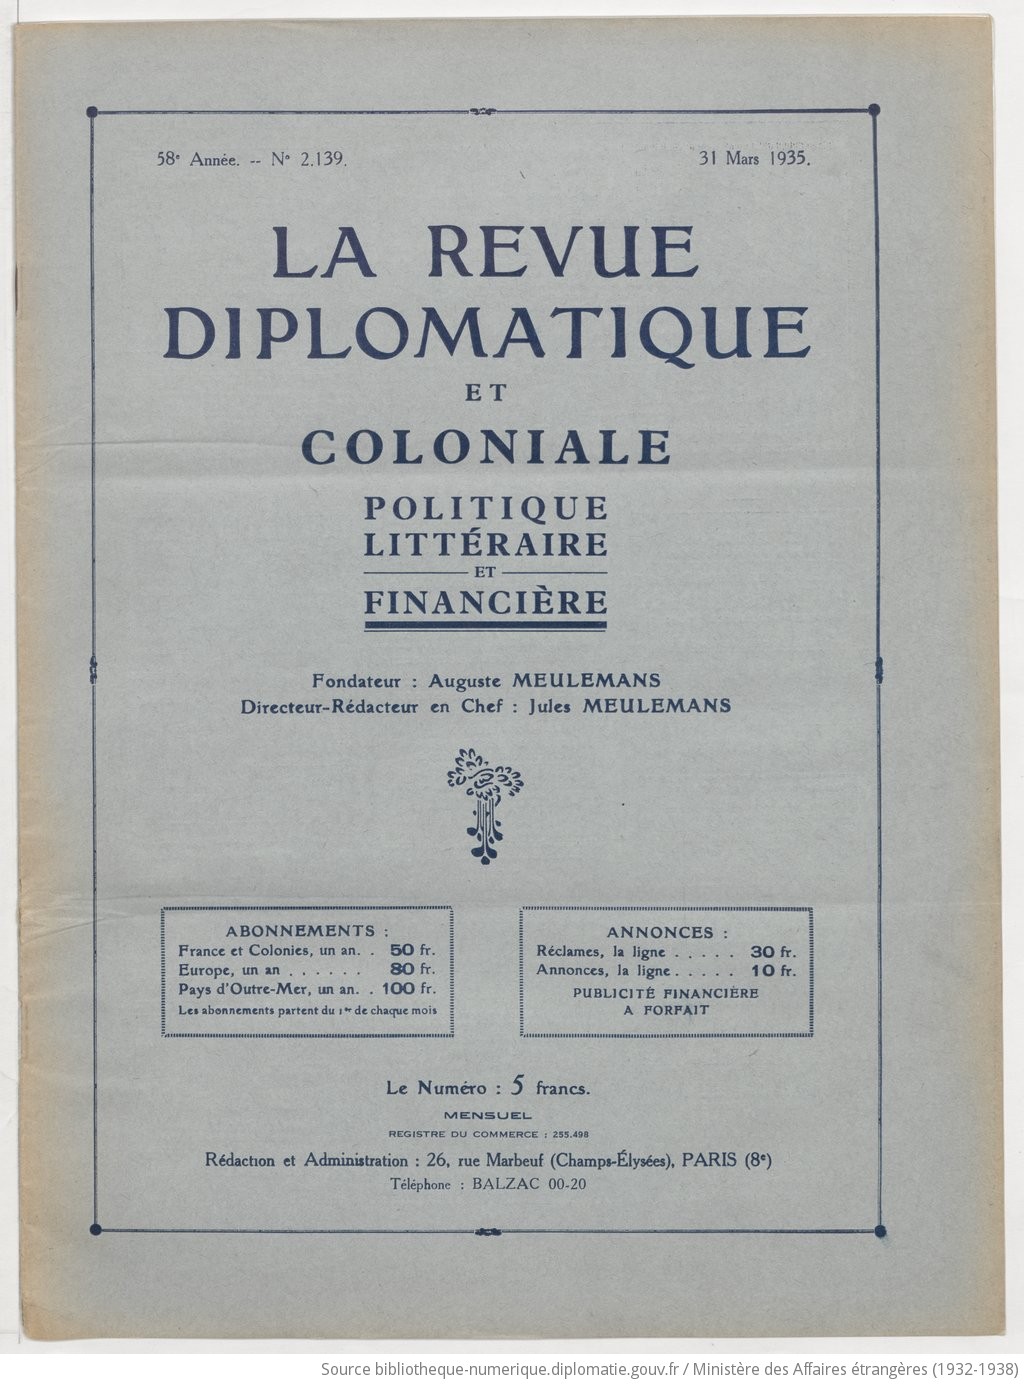 ÙØªÙØ¬Ø© Ø¨Ø­Ø« Ø§ÙØµÙØ± Ø¹Ù âªla revue diplomatique et colonialeâ¬â